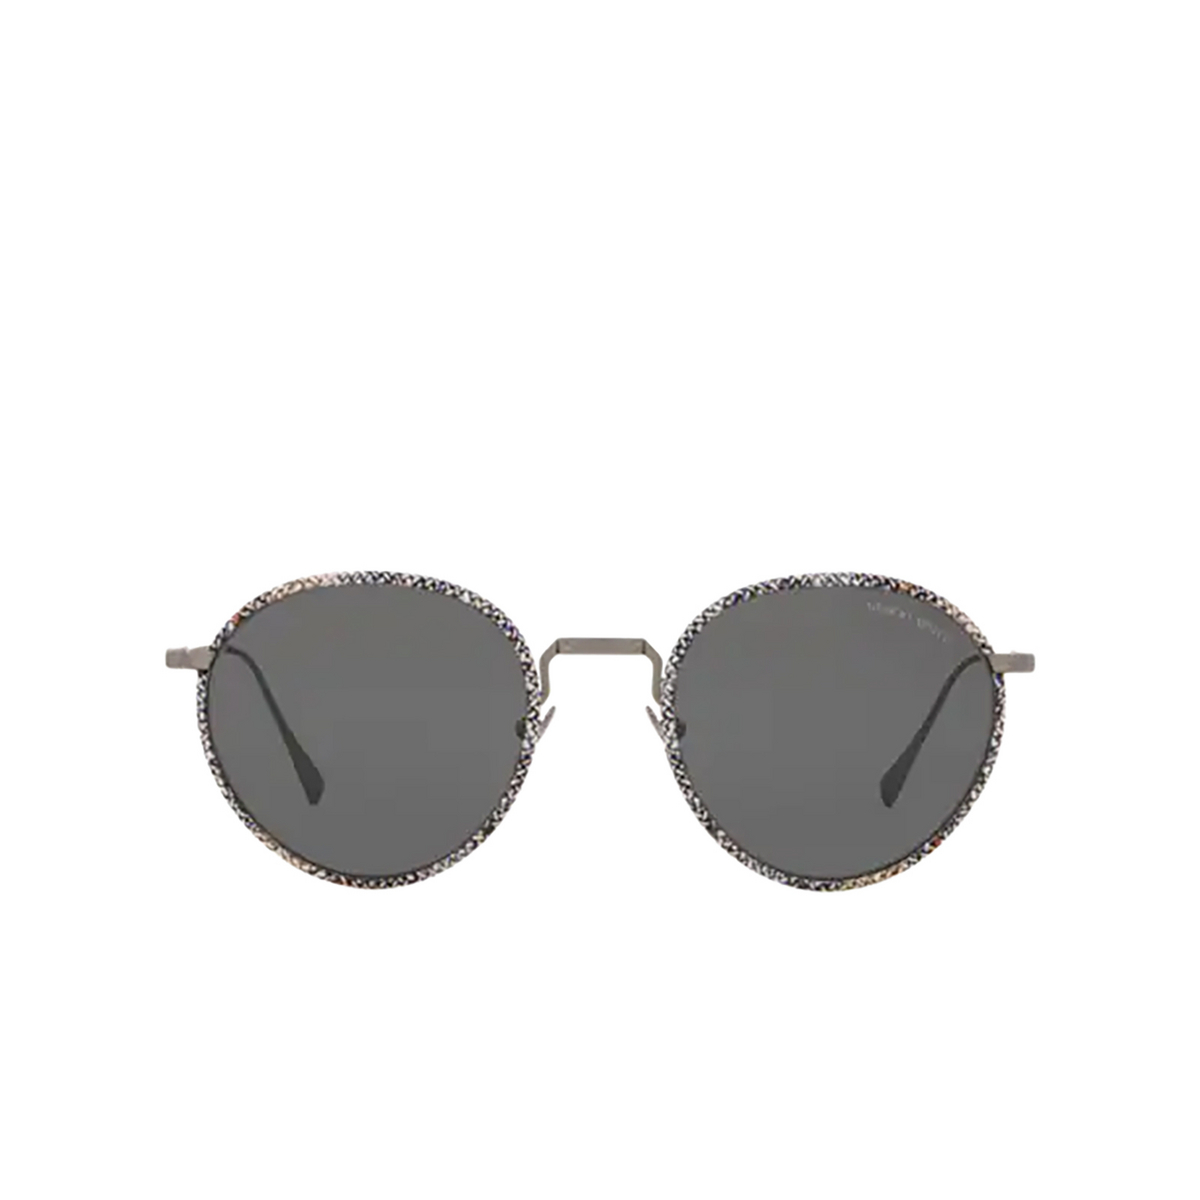 Giorgio Armani® Round Sunglasses: AR6103J color Matte Gunmetal 300387 - front view.